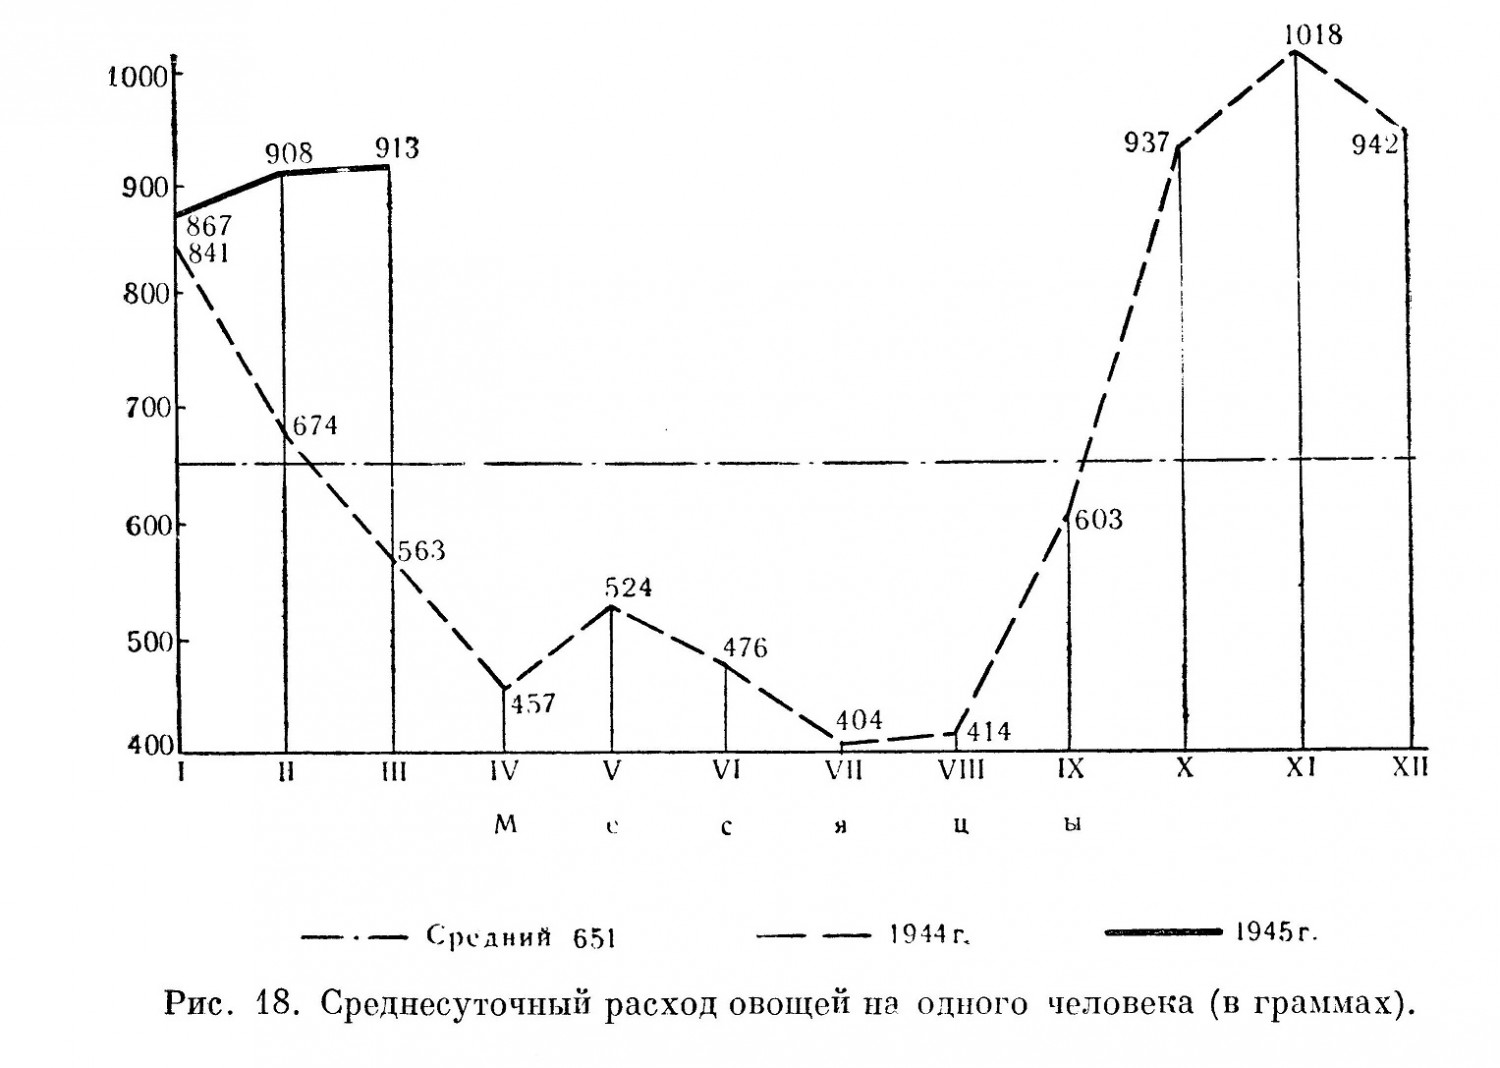 диаграмма среднесуточного расхода овощей на одного человека в действующей армии в 1944 и 1945 г.